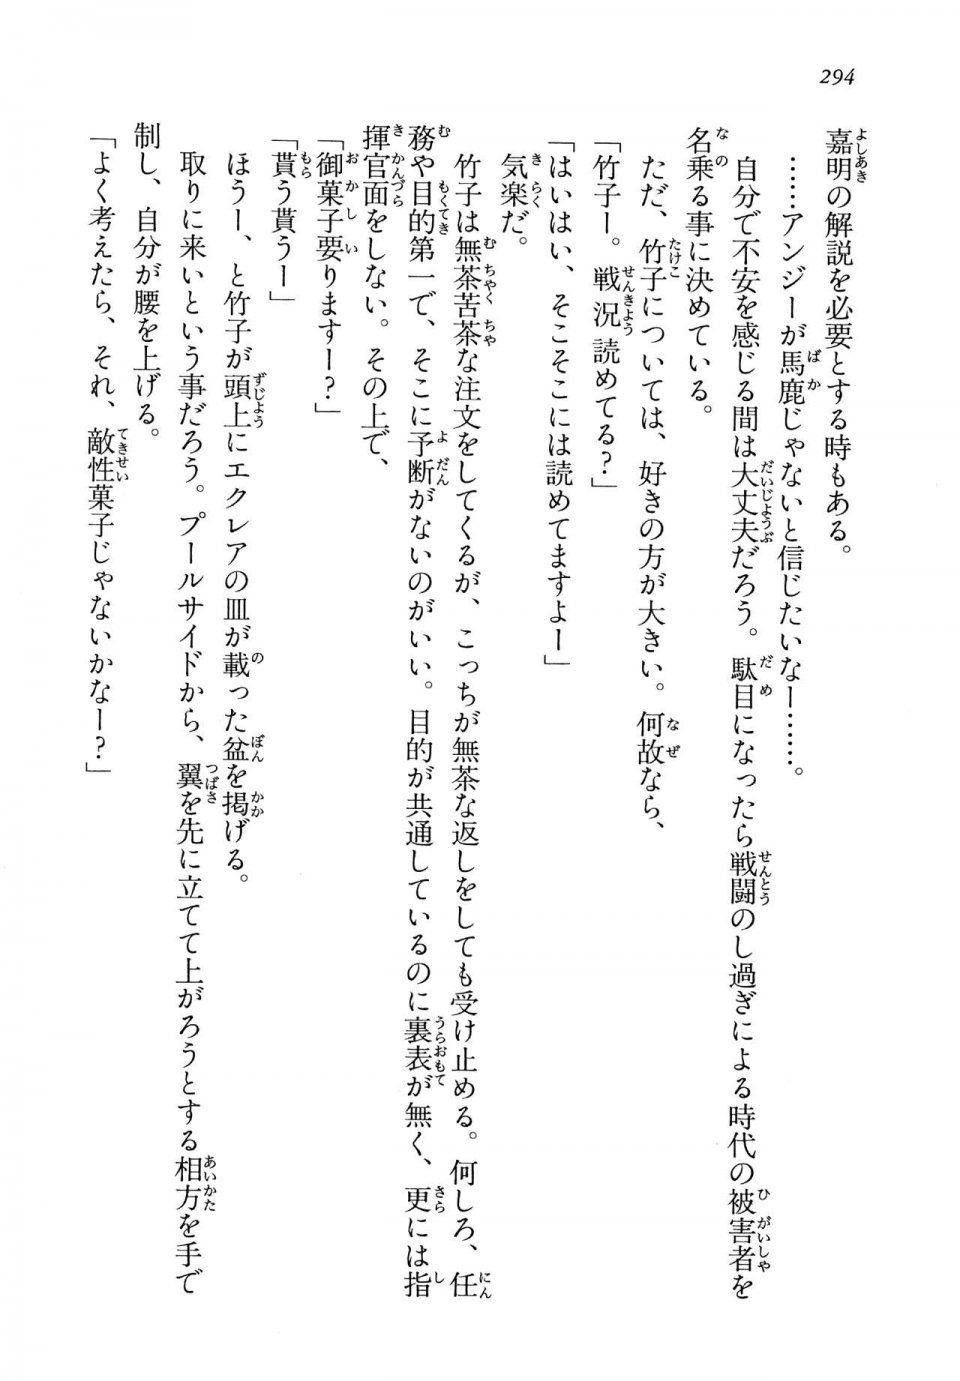 Kyoukai Senjou no Horizon LN Vol 13(6A) - Photo #294